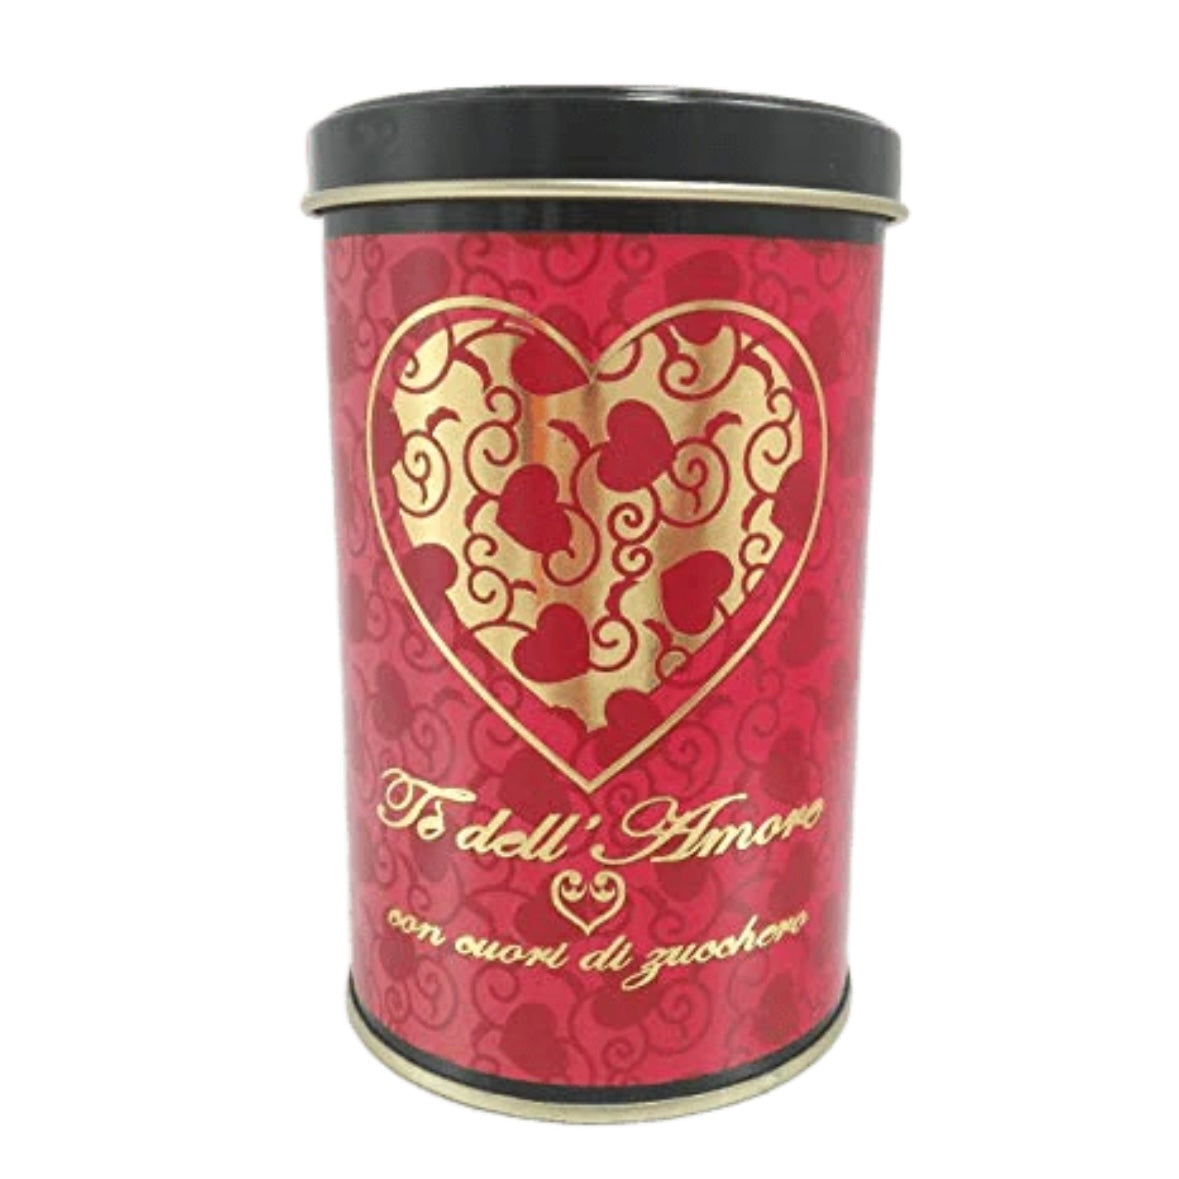 Tè dell'Amore nero Artigianale 100% Organico - Aromatizzati speciali 100g